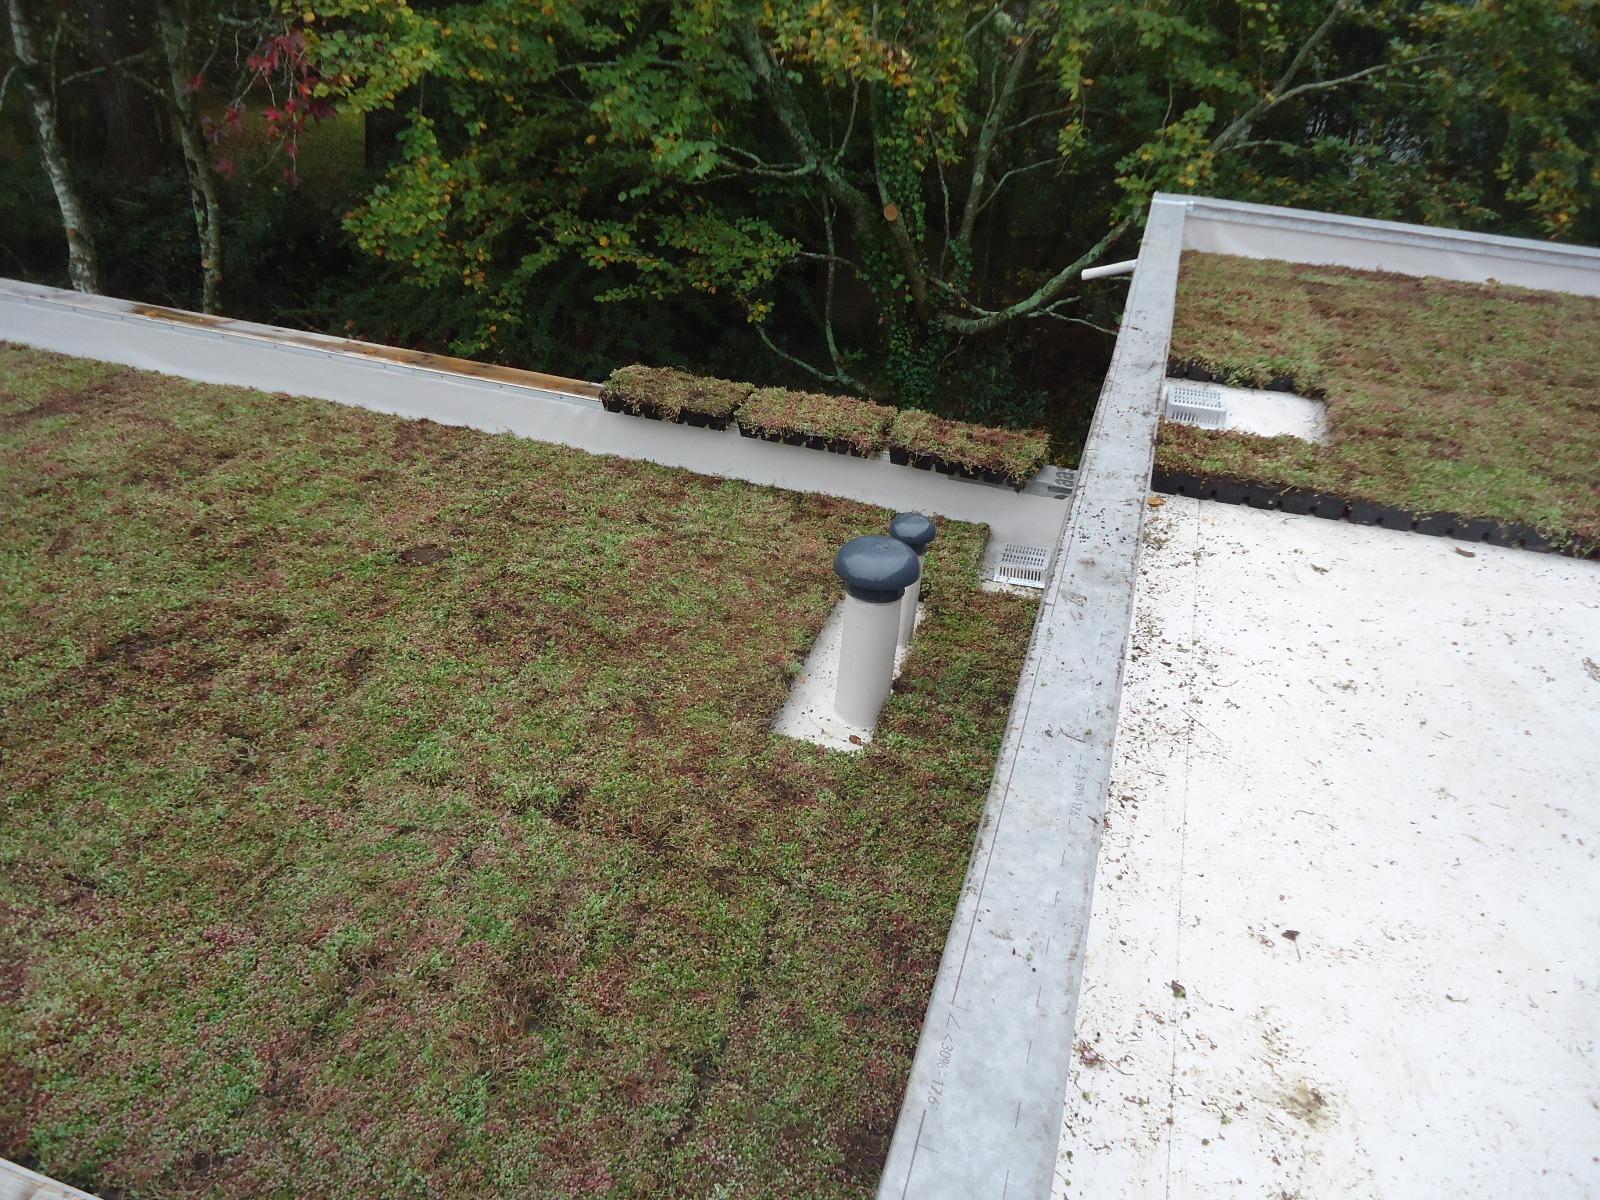 Guérande - Etanchéité toit terrasse isolé - Membrane FPO qualité environnementale - Végétalisation Sarnapack - Yohann Chazeaux MO à Pornic et Agence Kenenso architectes à Nantes